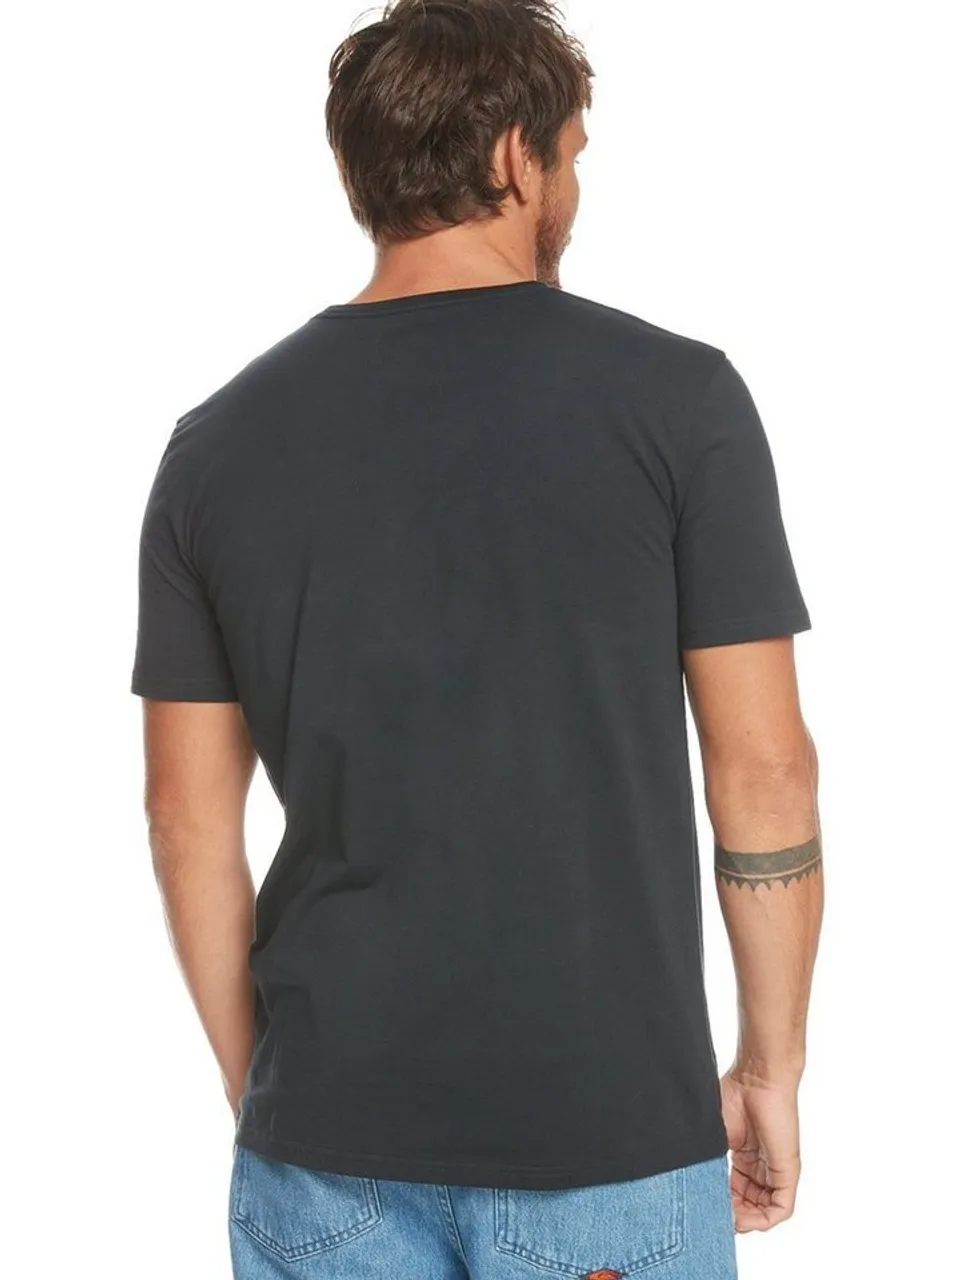 Quiksilver T-Shirt Gradient Line